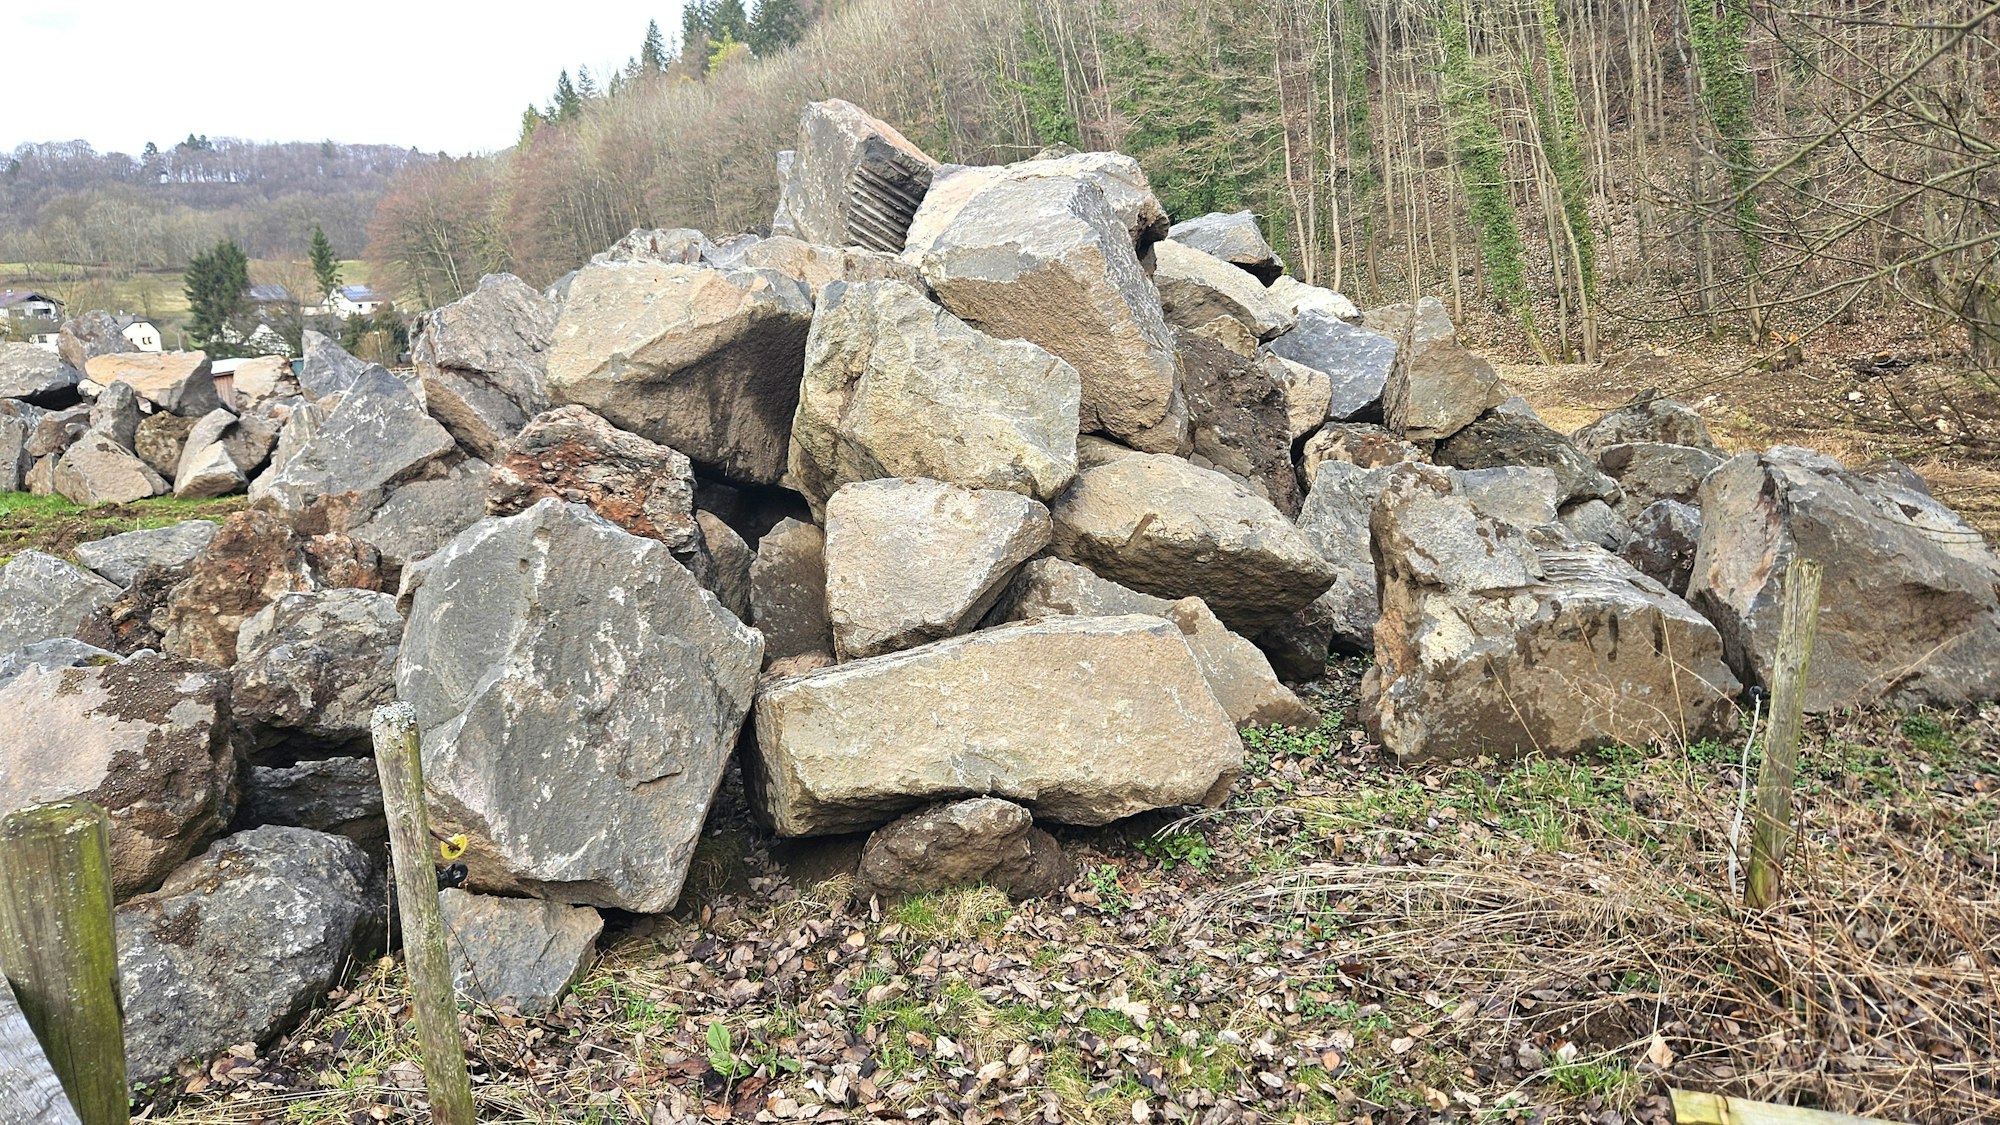 Blick auf einen Haufen mit verschieden großen Basaltsteinen.